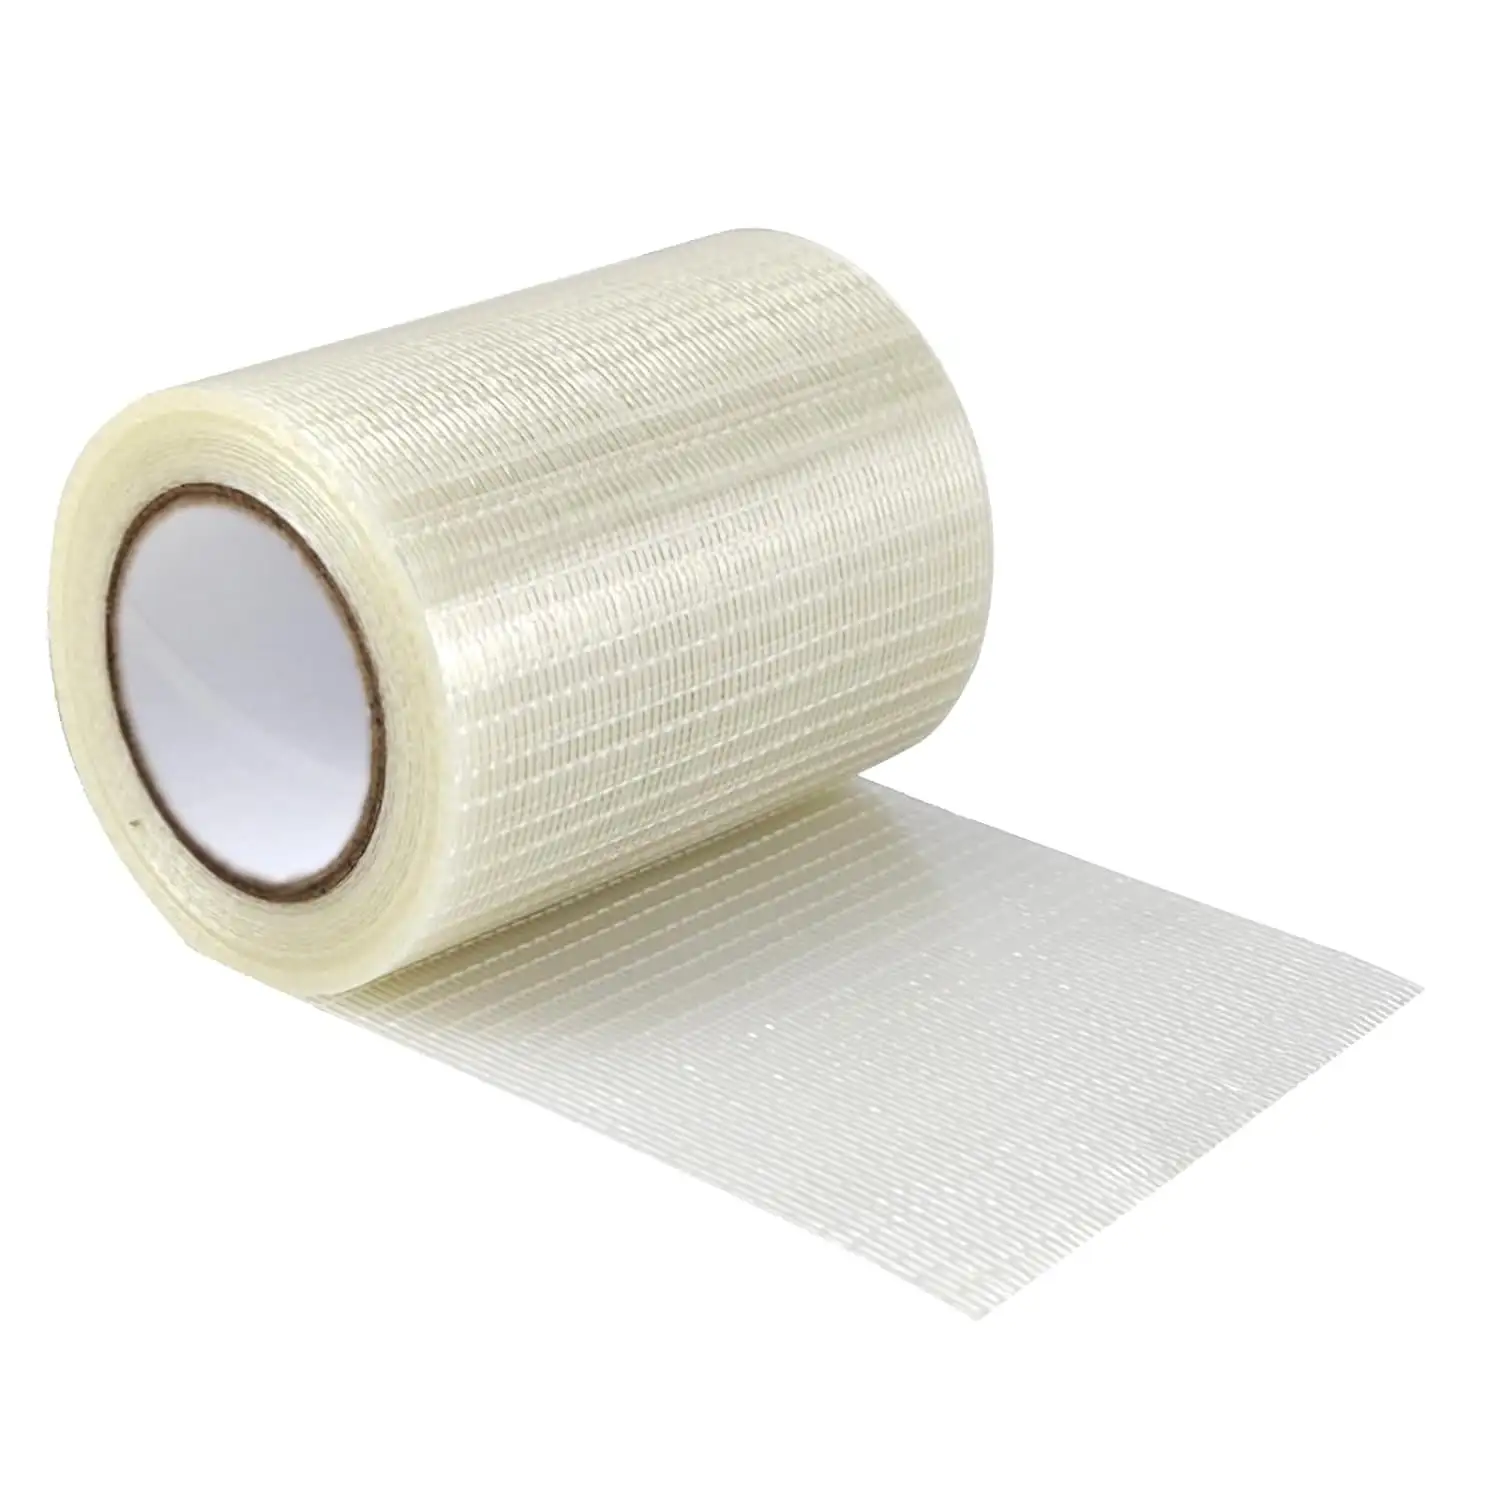 Fita de cintar de filamento de grau de mercadoria resistente reforçada com fibra de vidro mono/uni-direcional para selagem de caixas